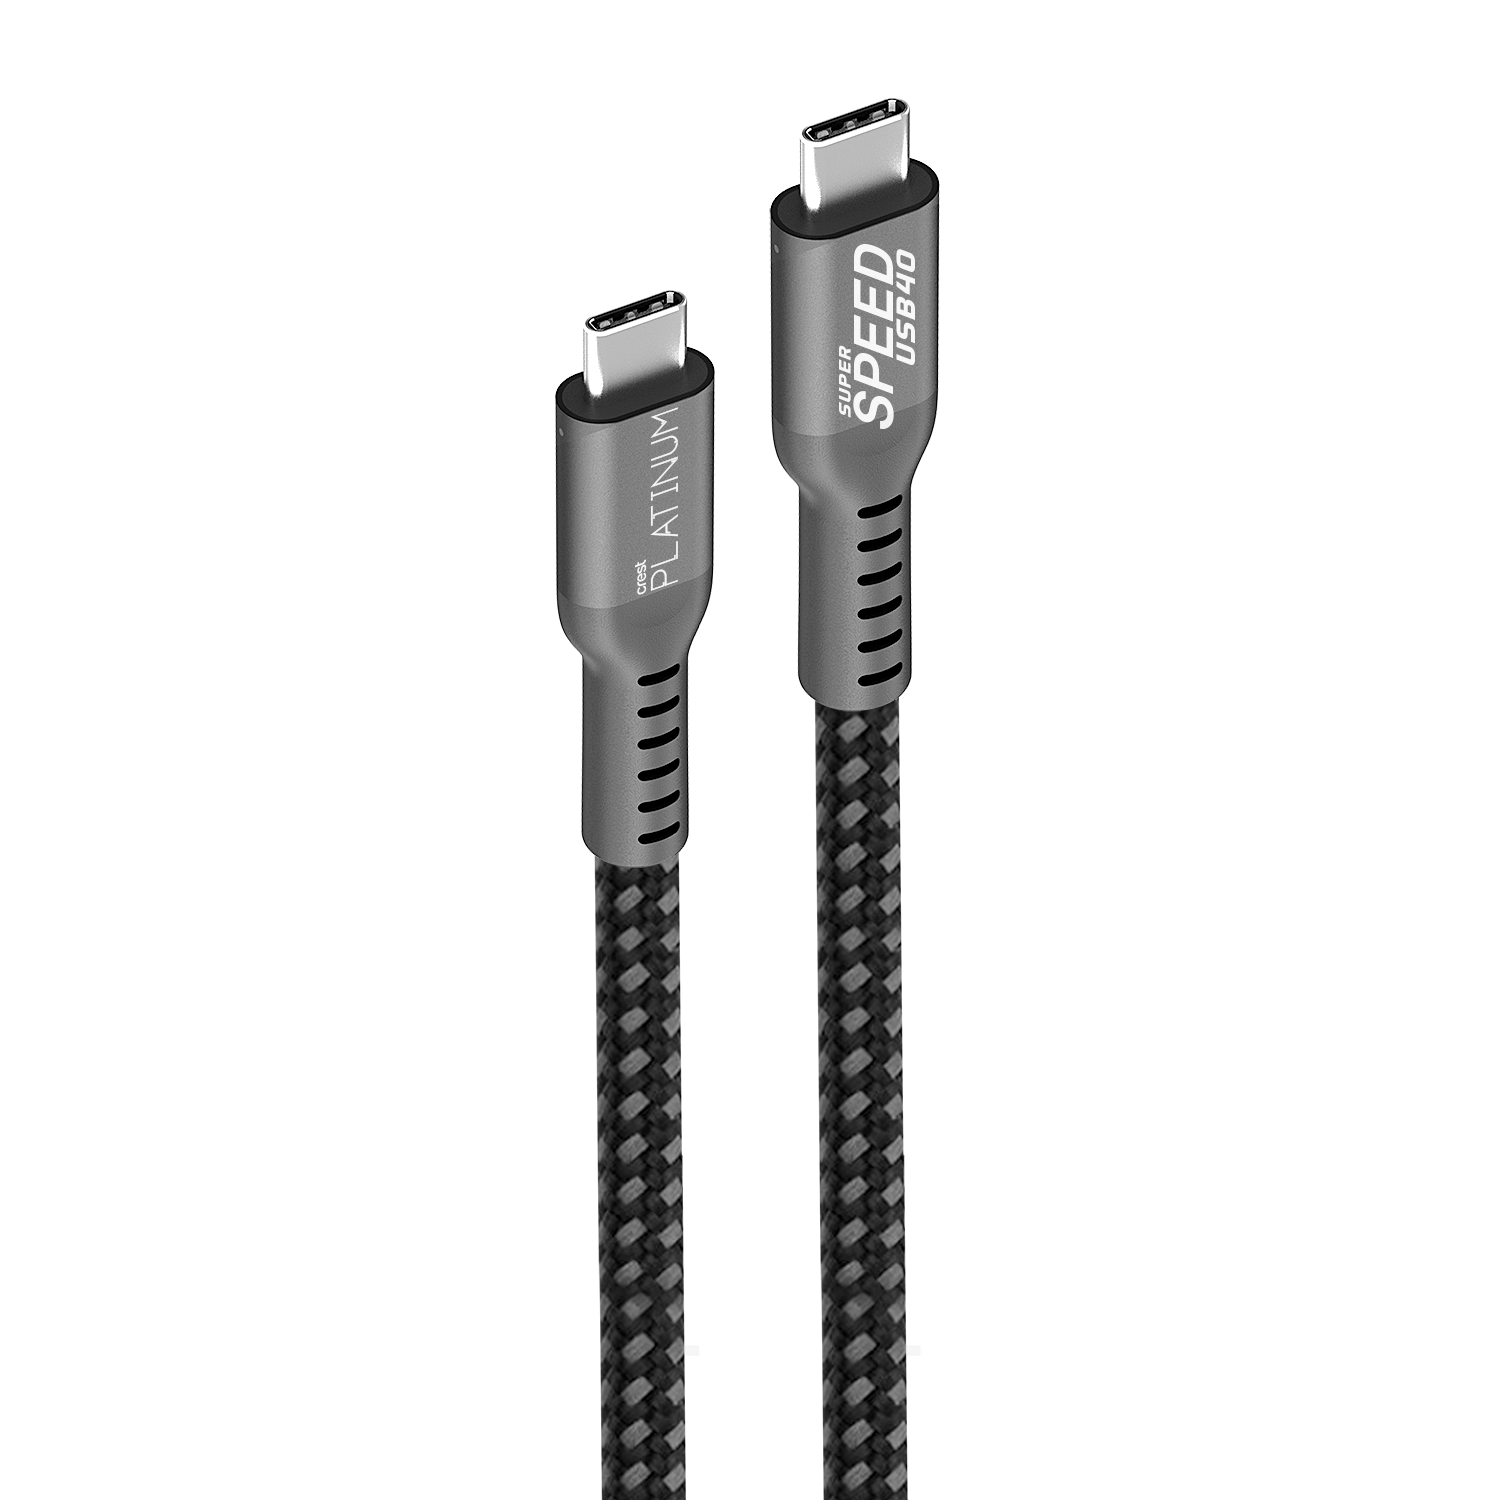 Platinum USB 4 - USB-C To USB-C Cable 1M